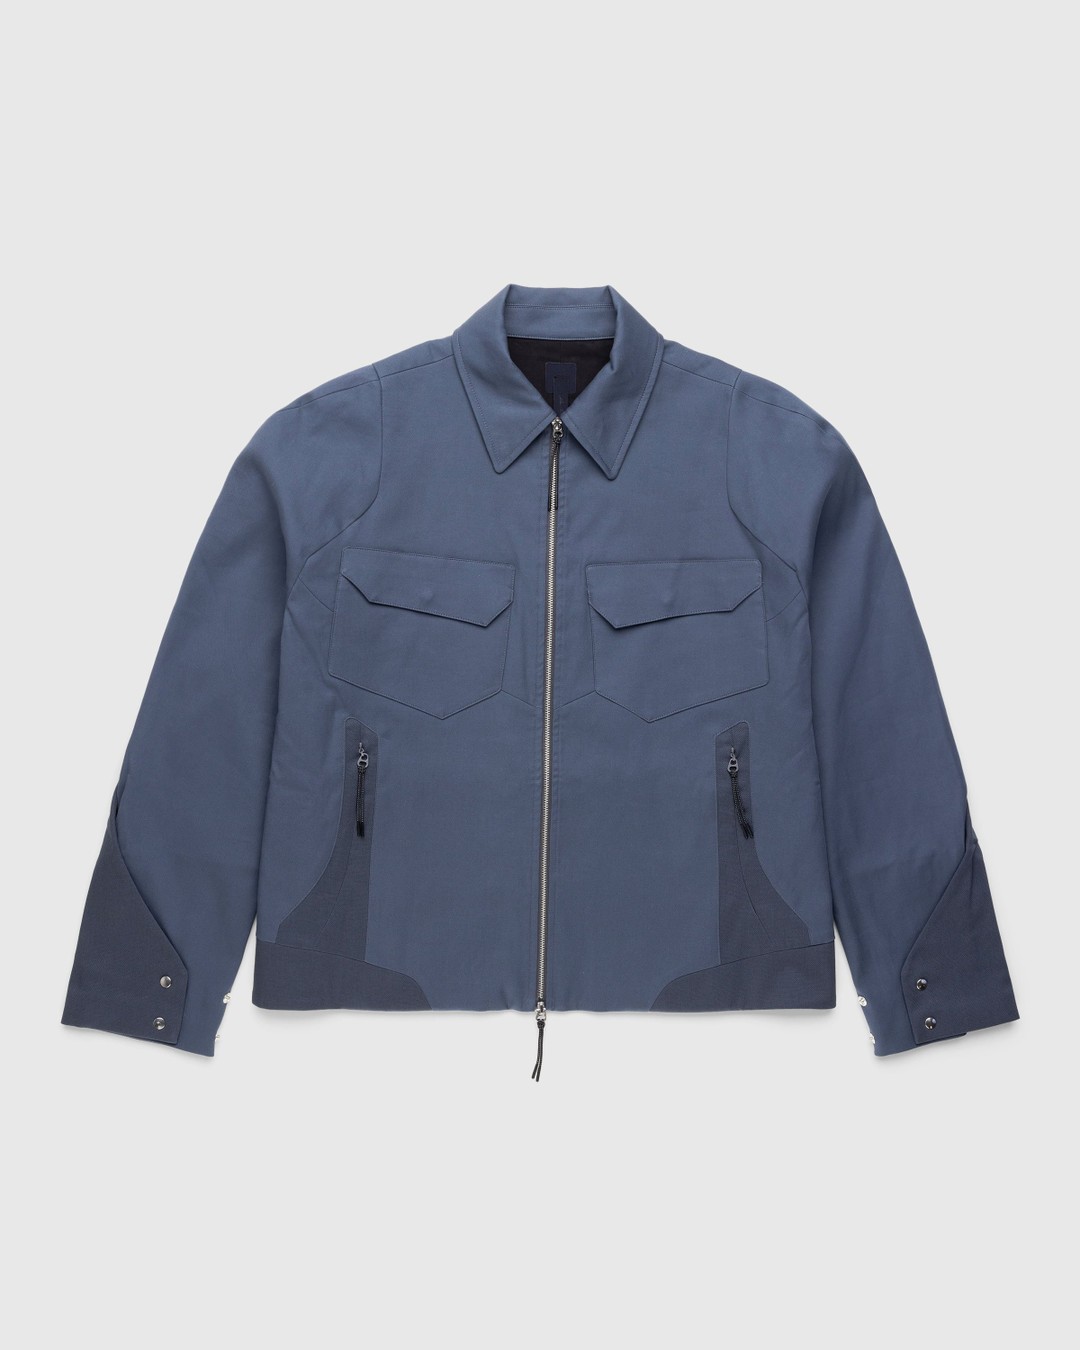 J.L-A.L – Delwa Jacket Blue - Outerwear - Blue - Image 1